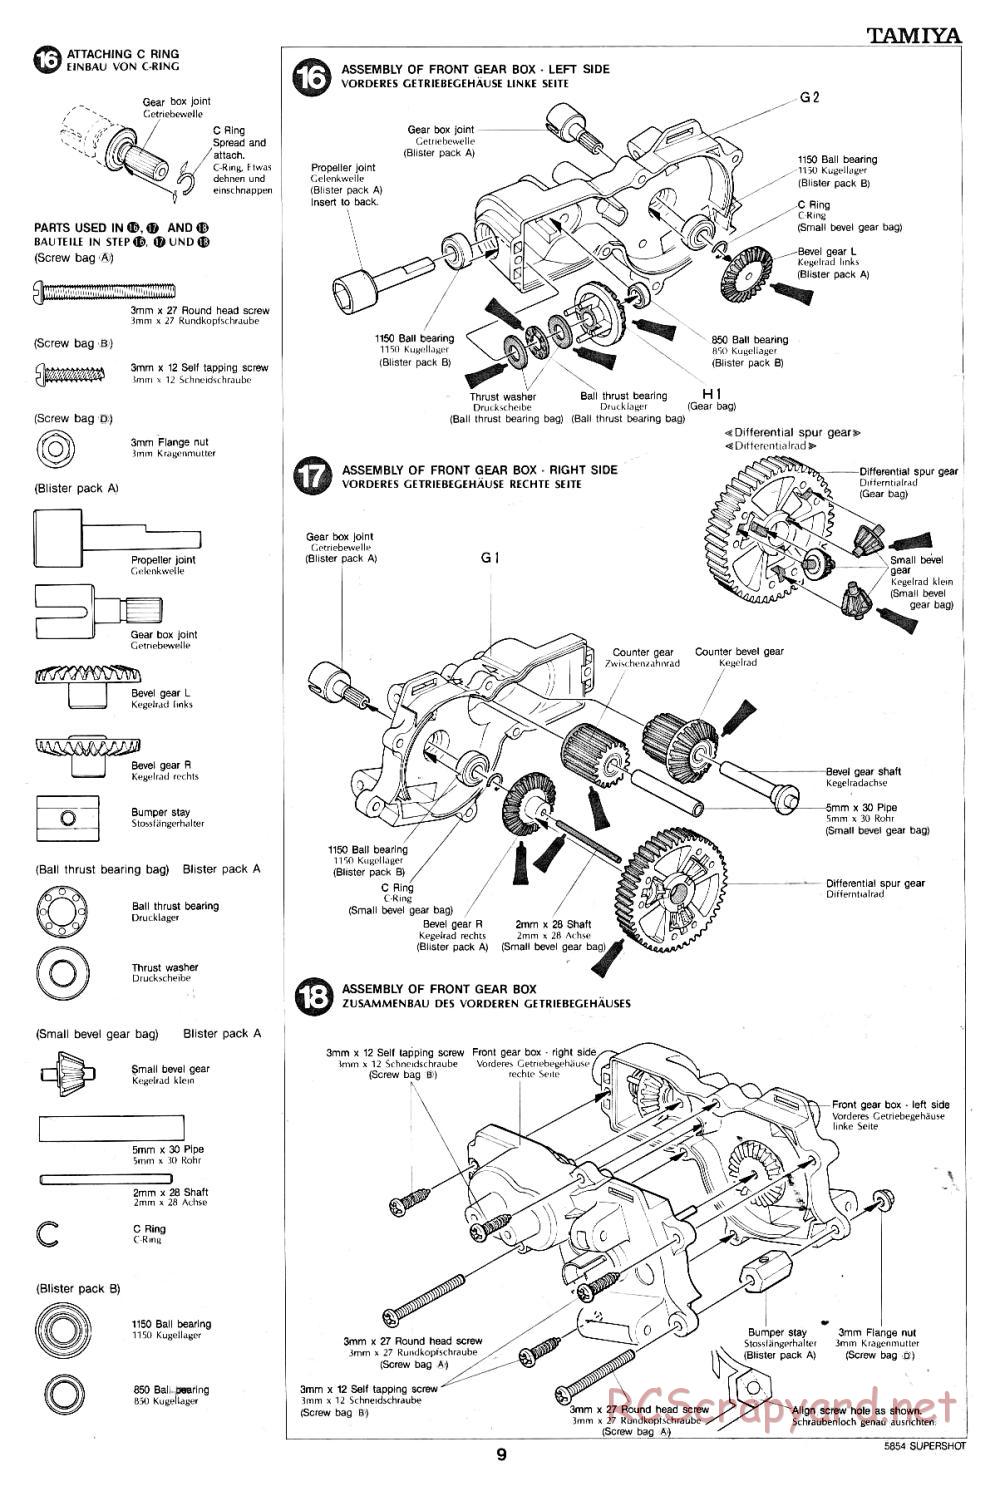 Tamiya - Supershot - 58054 - Manual - Page 9